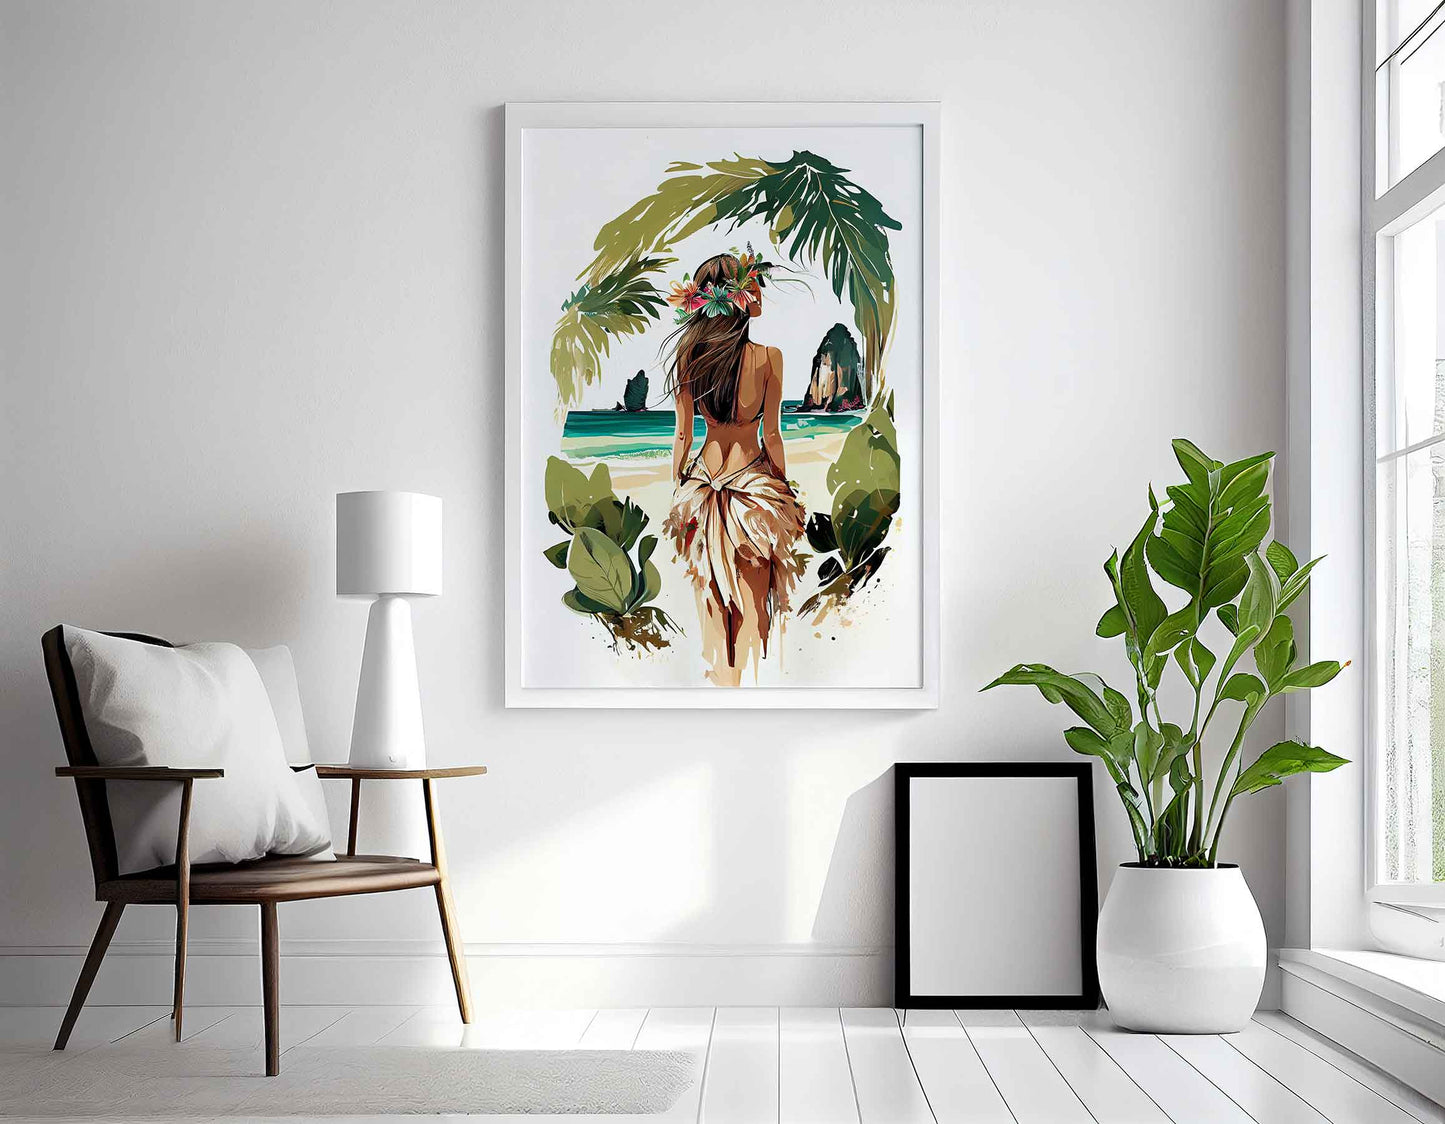 Framed Image of Boho Girl on Tropical Beach Illustration Wall Art Poster Print